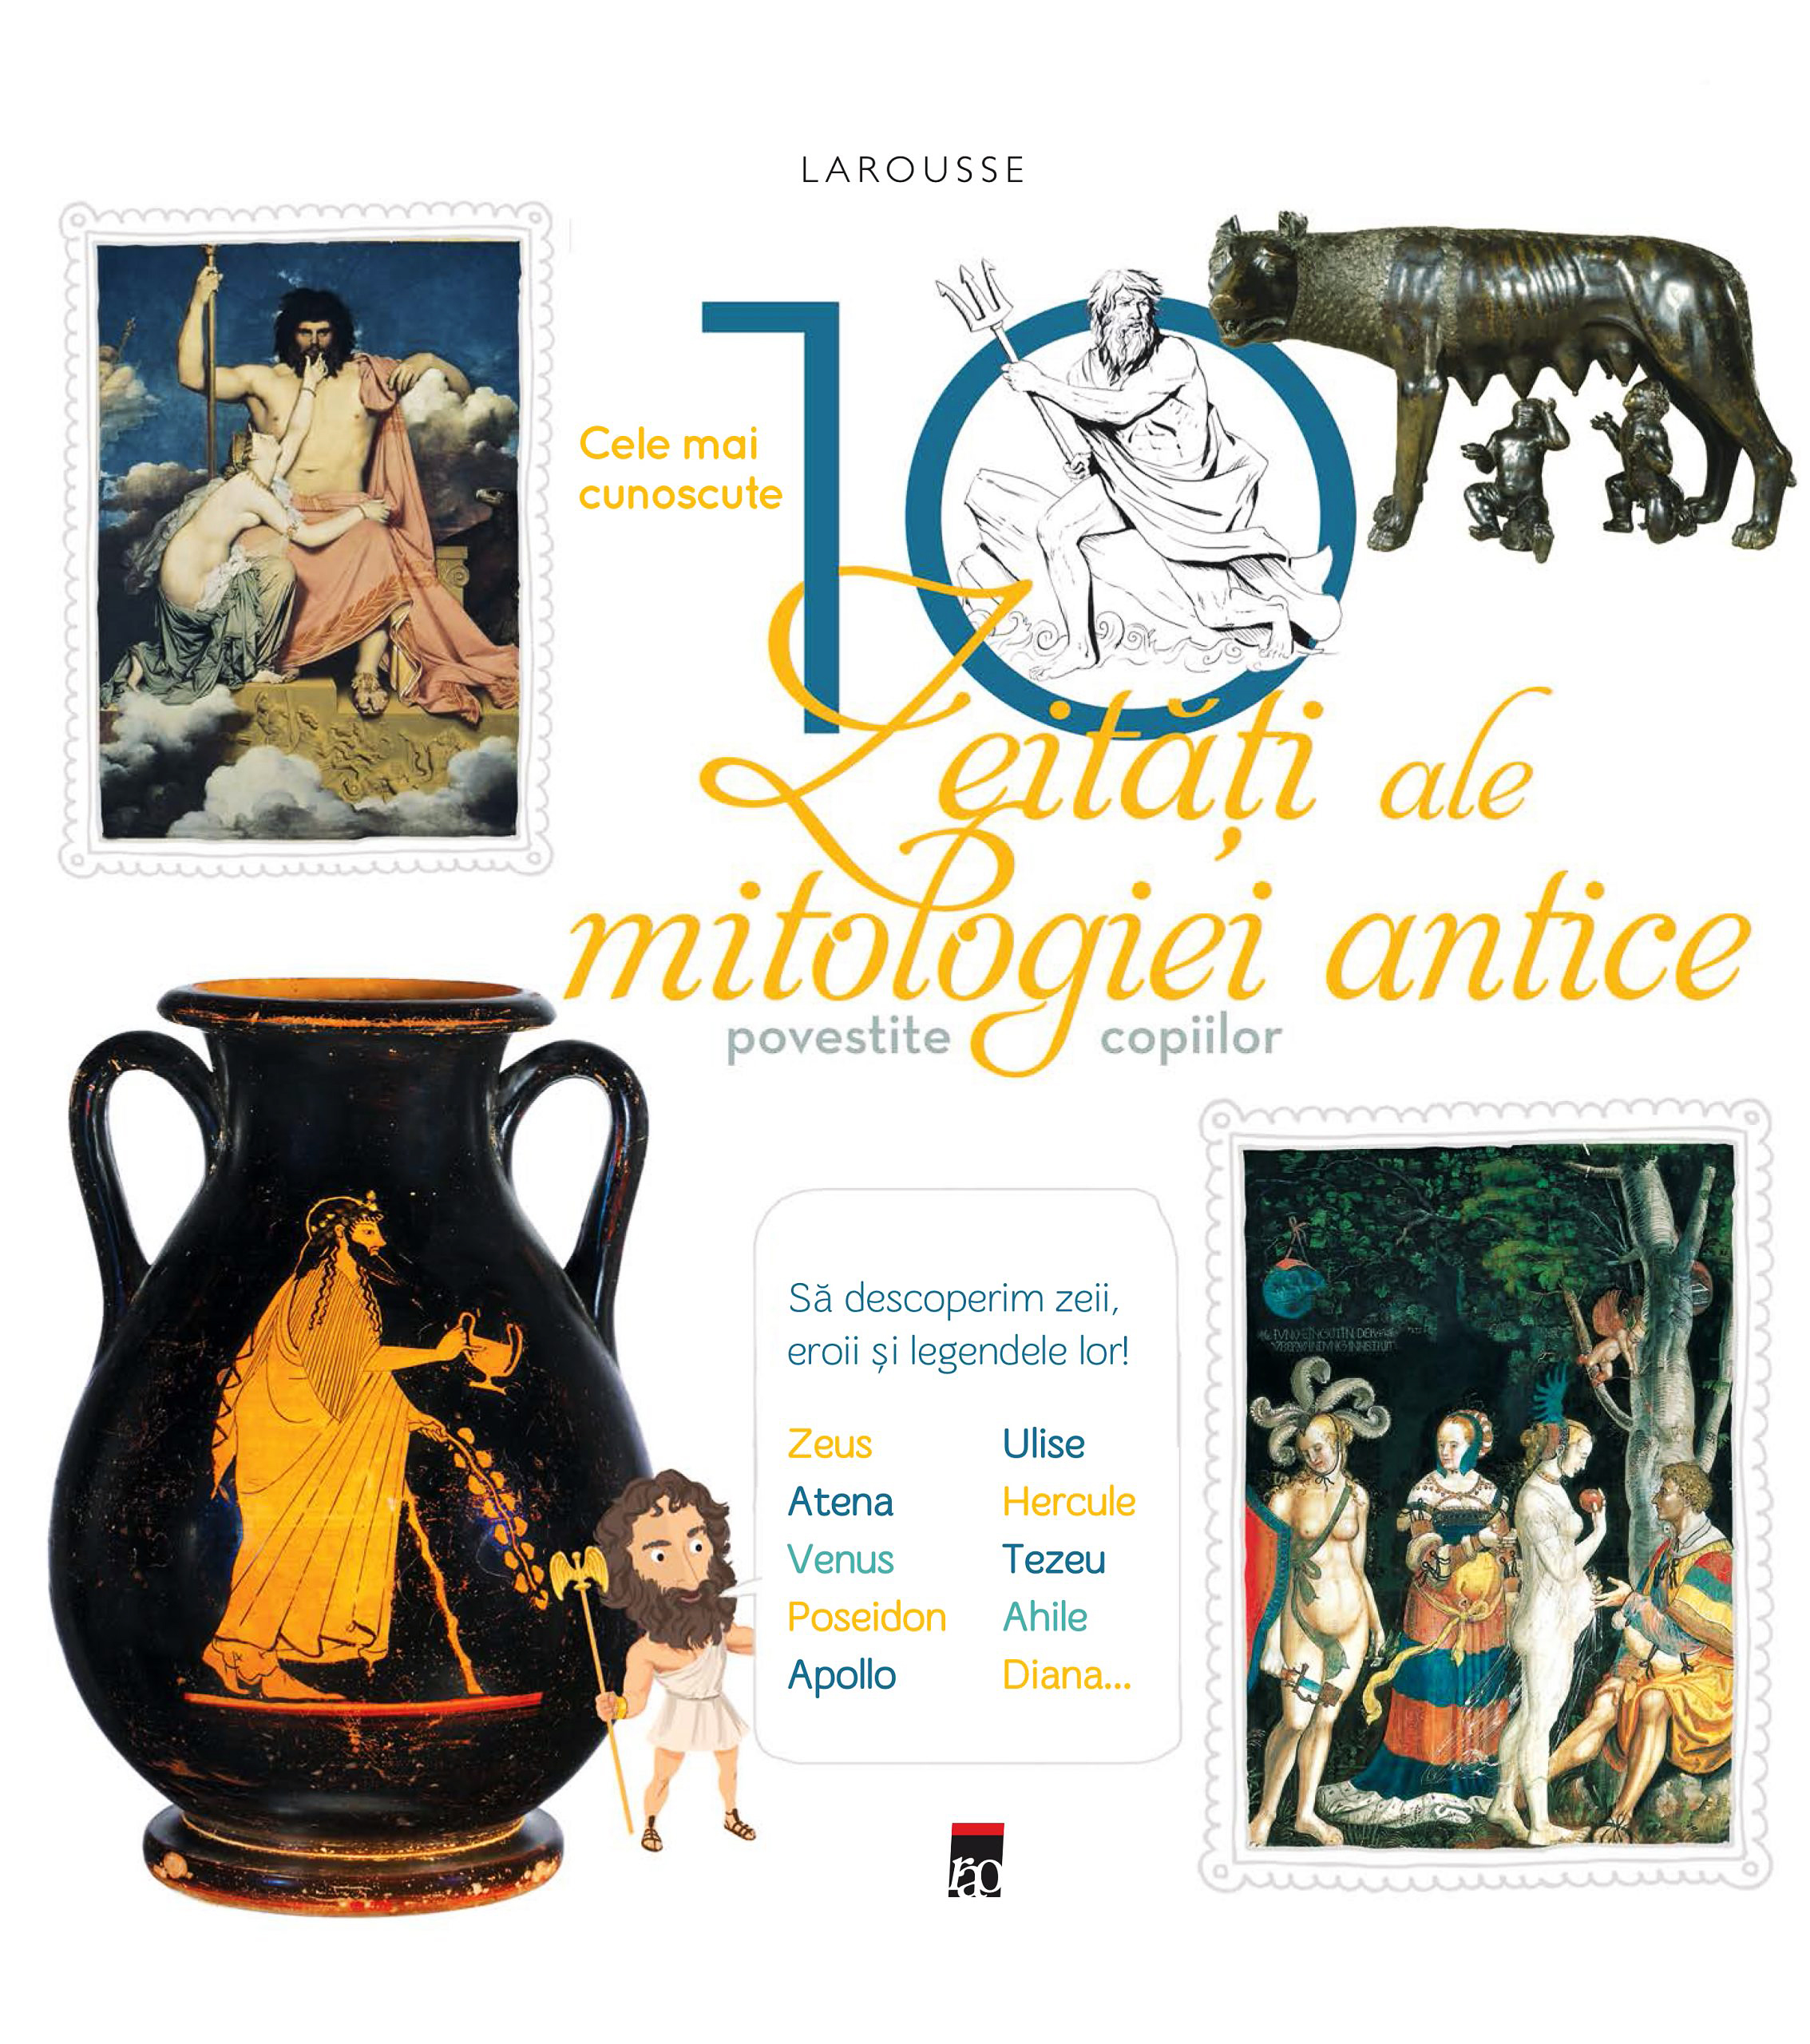 PDF Larousse. Cele mai cunoscute 10 zeitati ale mitologiei antice povestite copiilor | carturesti.ro Bibliografie scolara